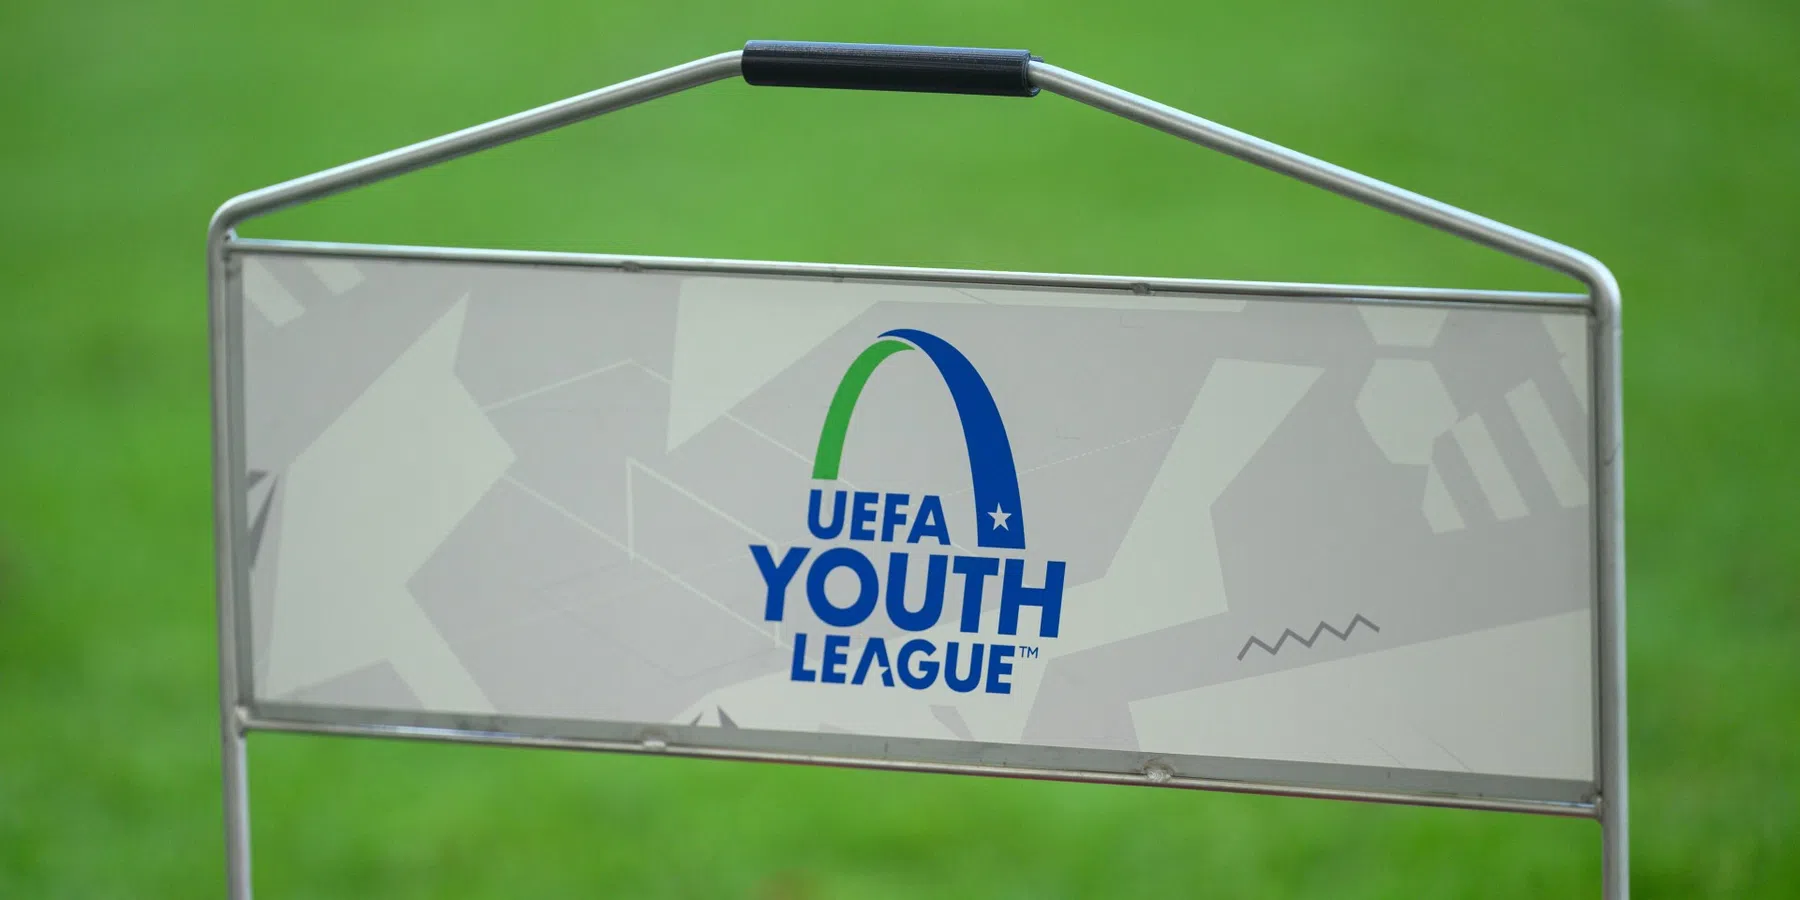 Welke clubs zijn nog actief in de UEFA Youth League?